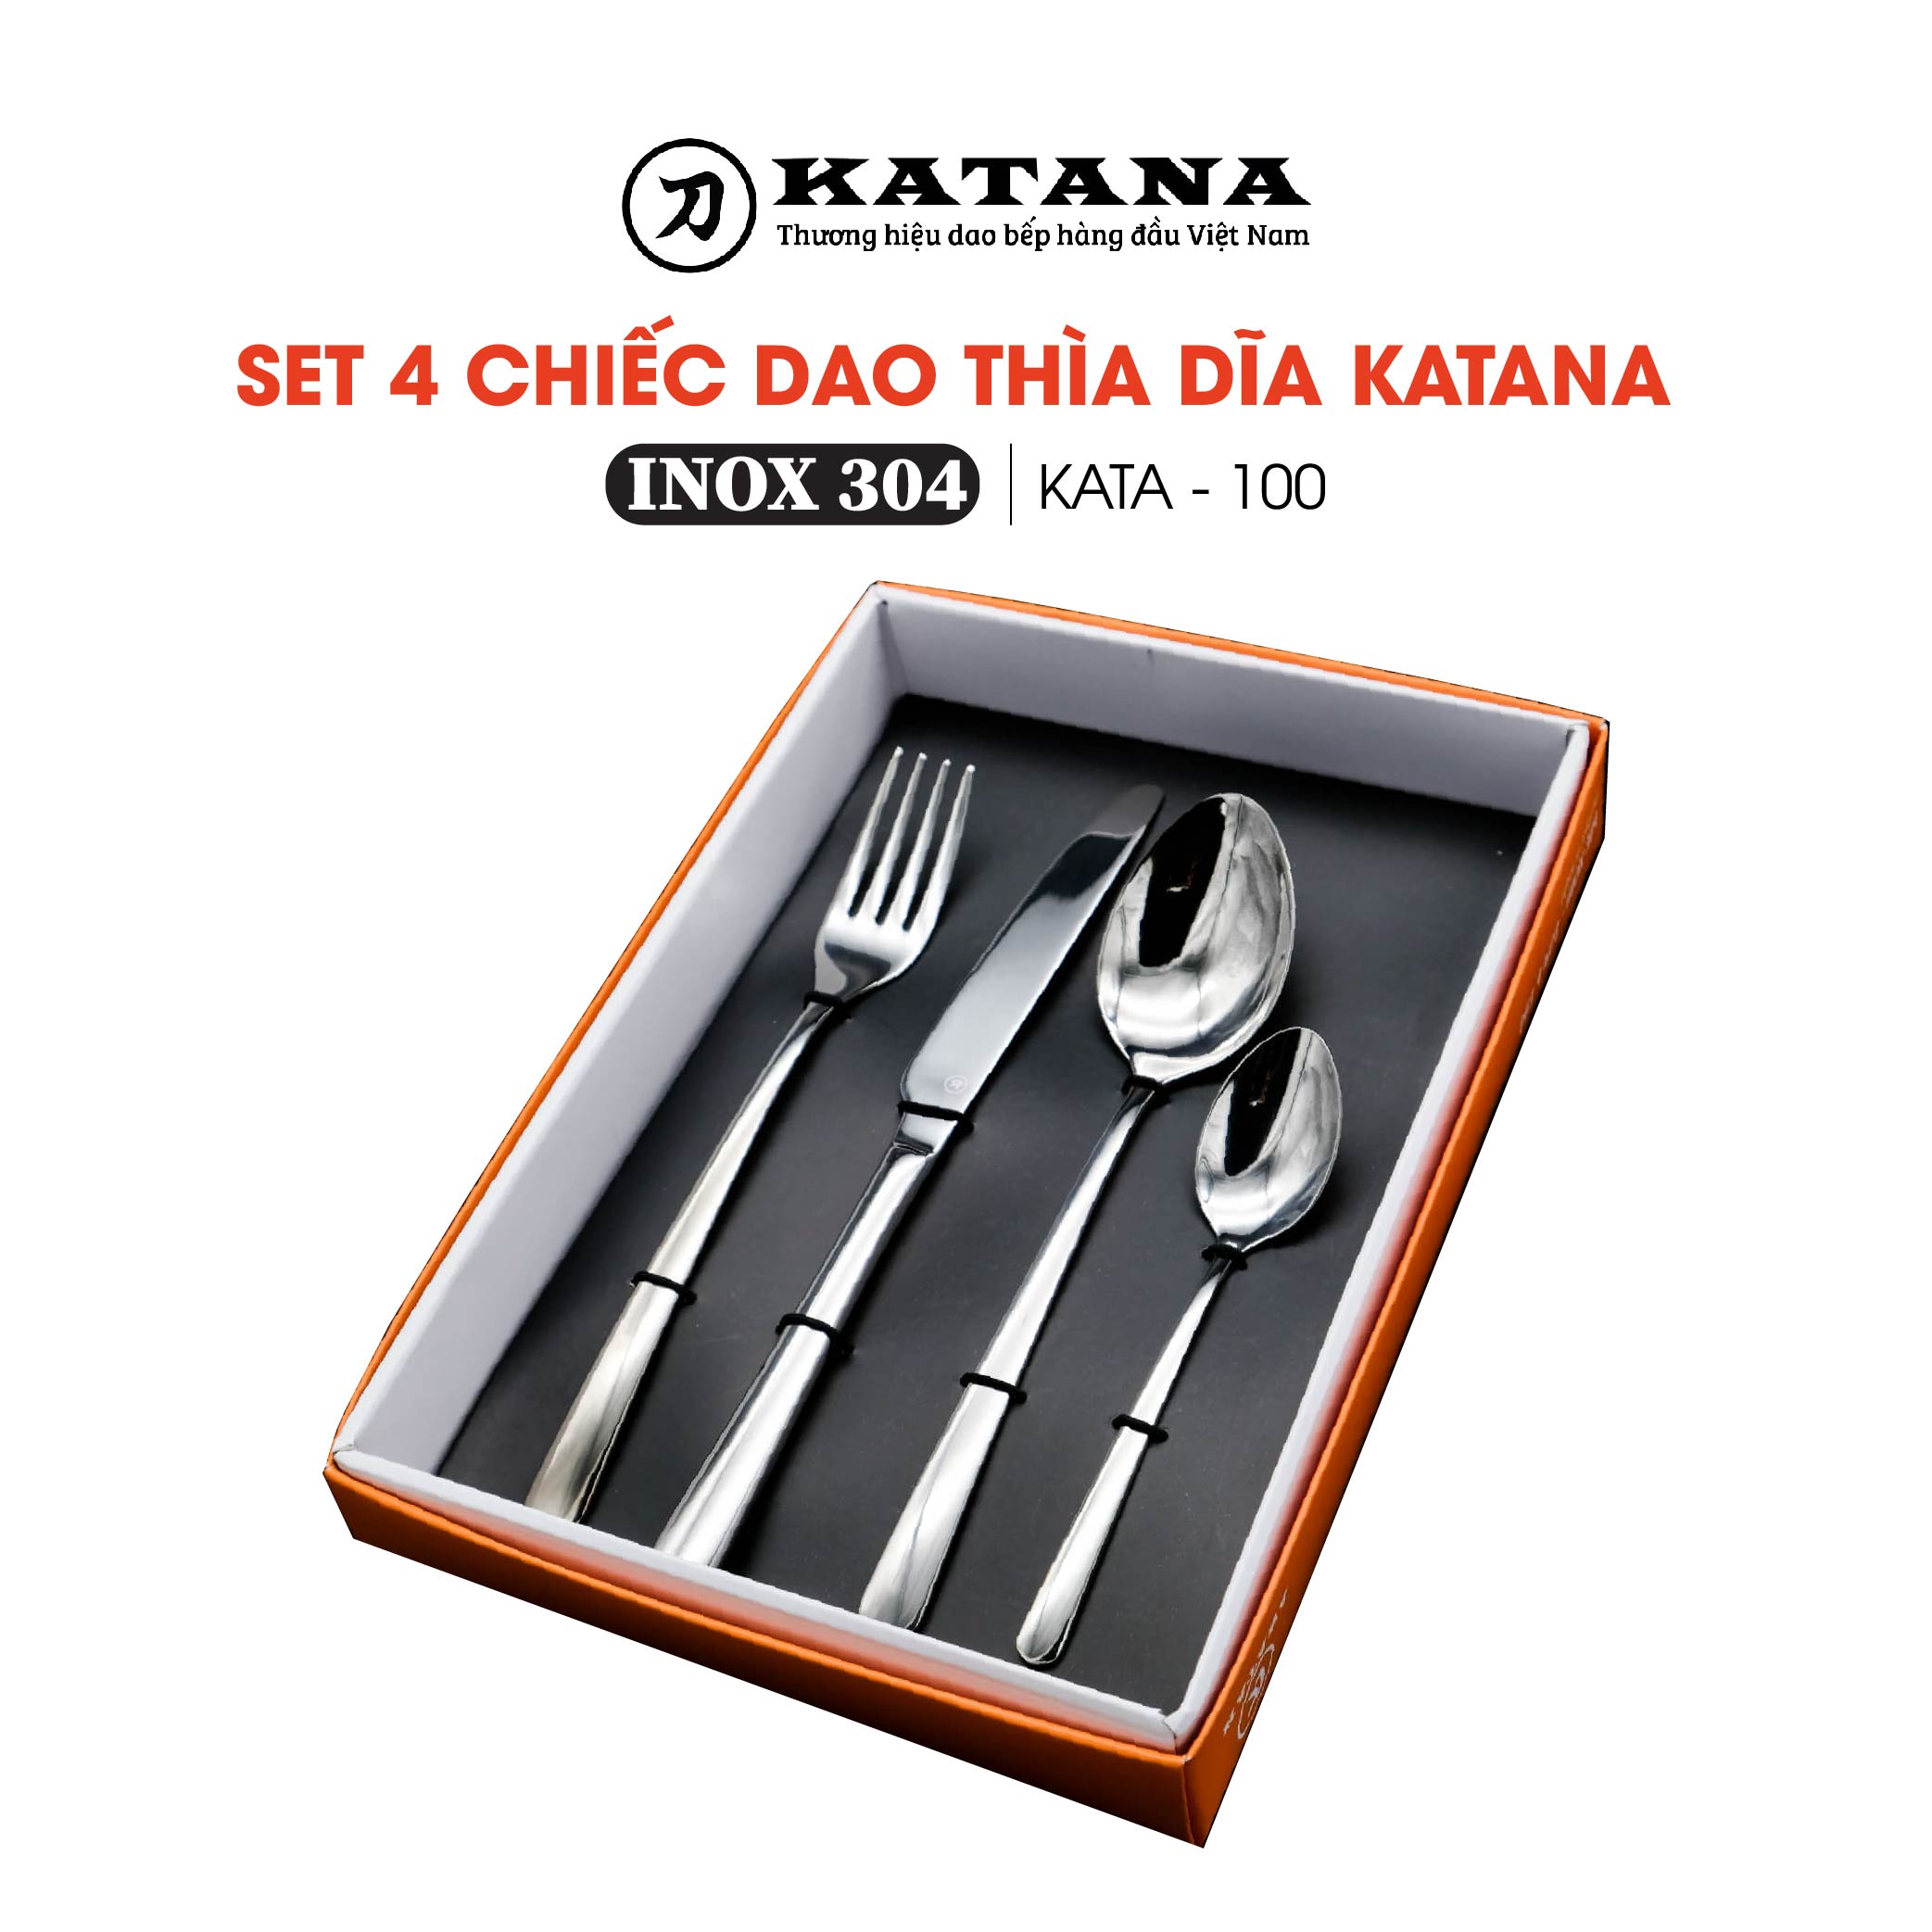 Set 4 chiếc thìa dĩa cao cấp thương hiệu KATANA - KATA100